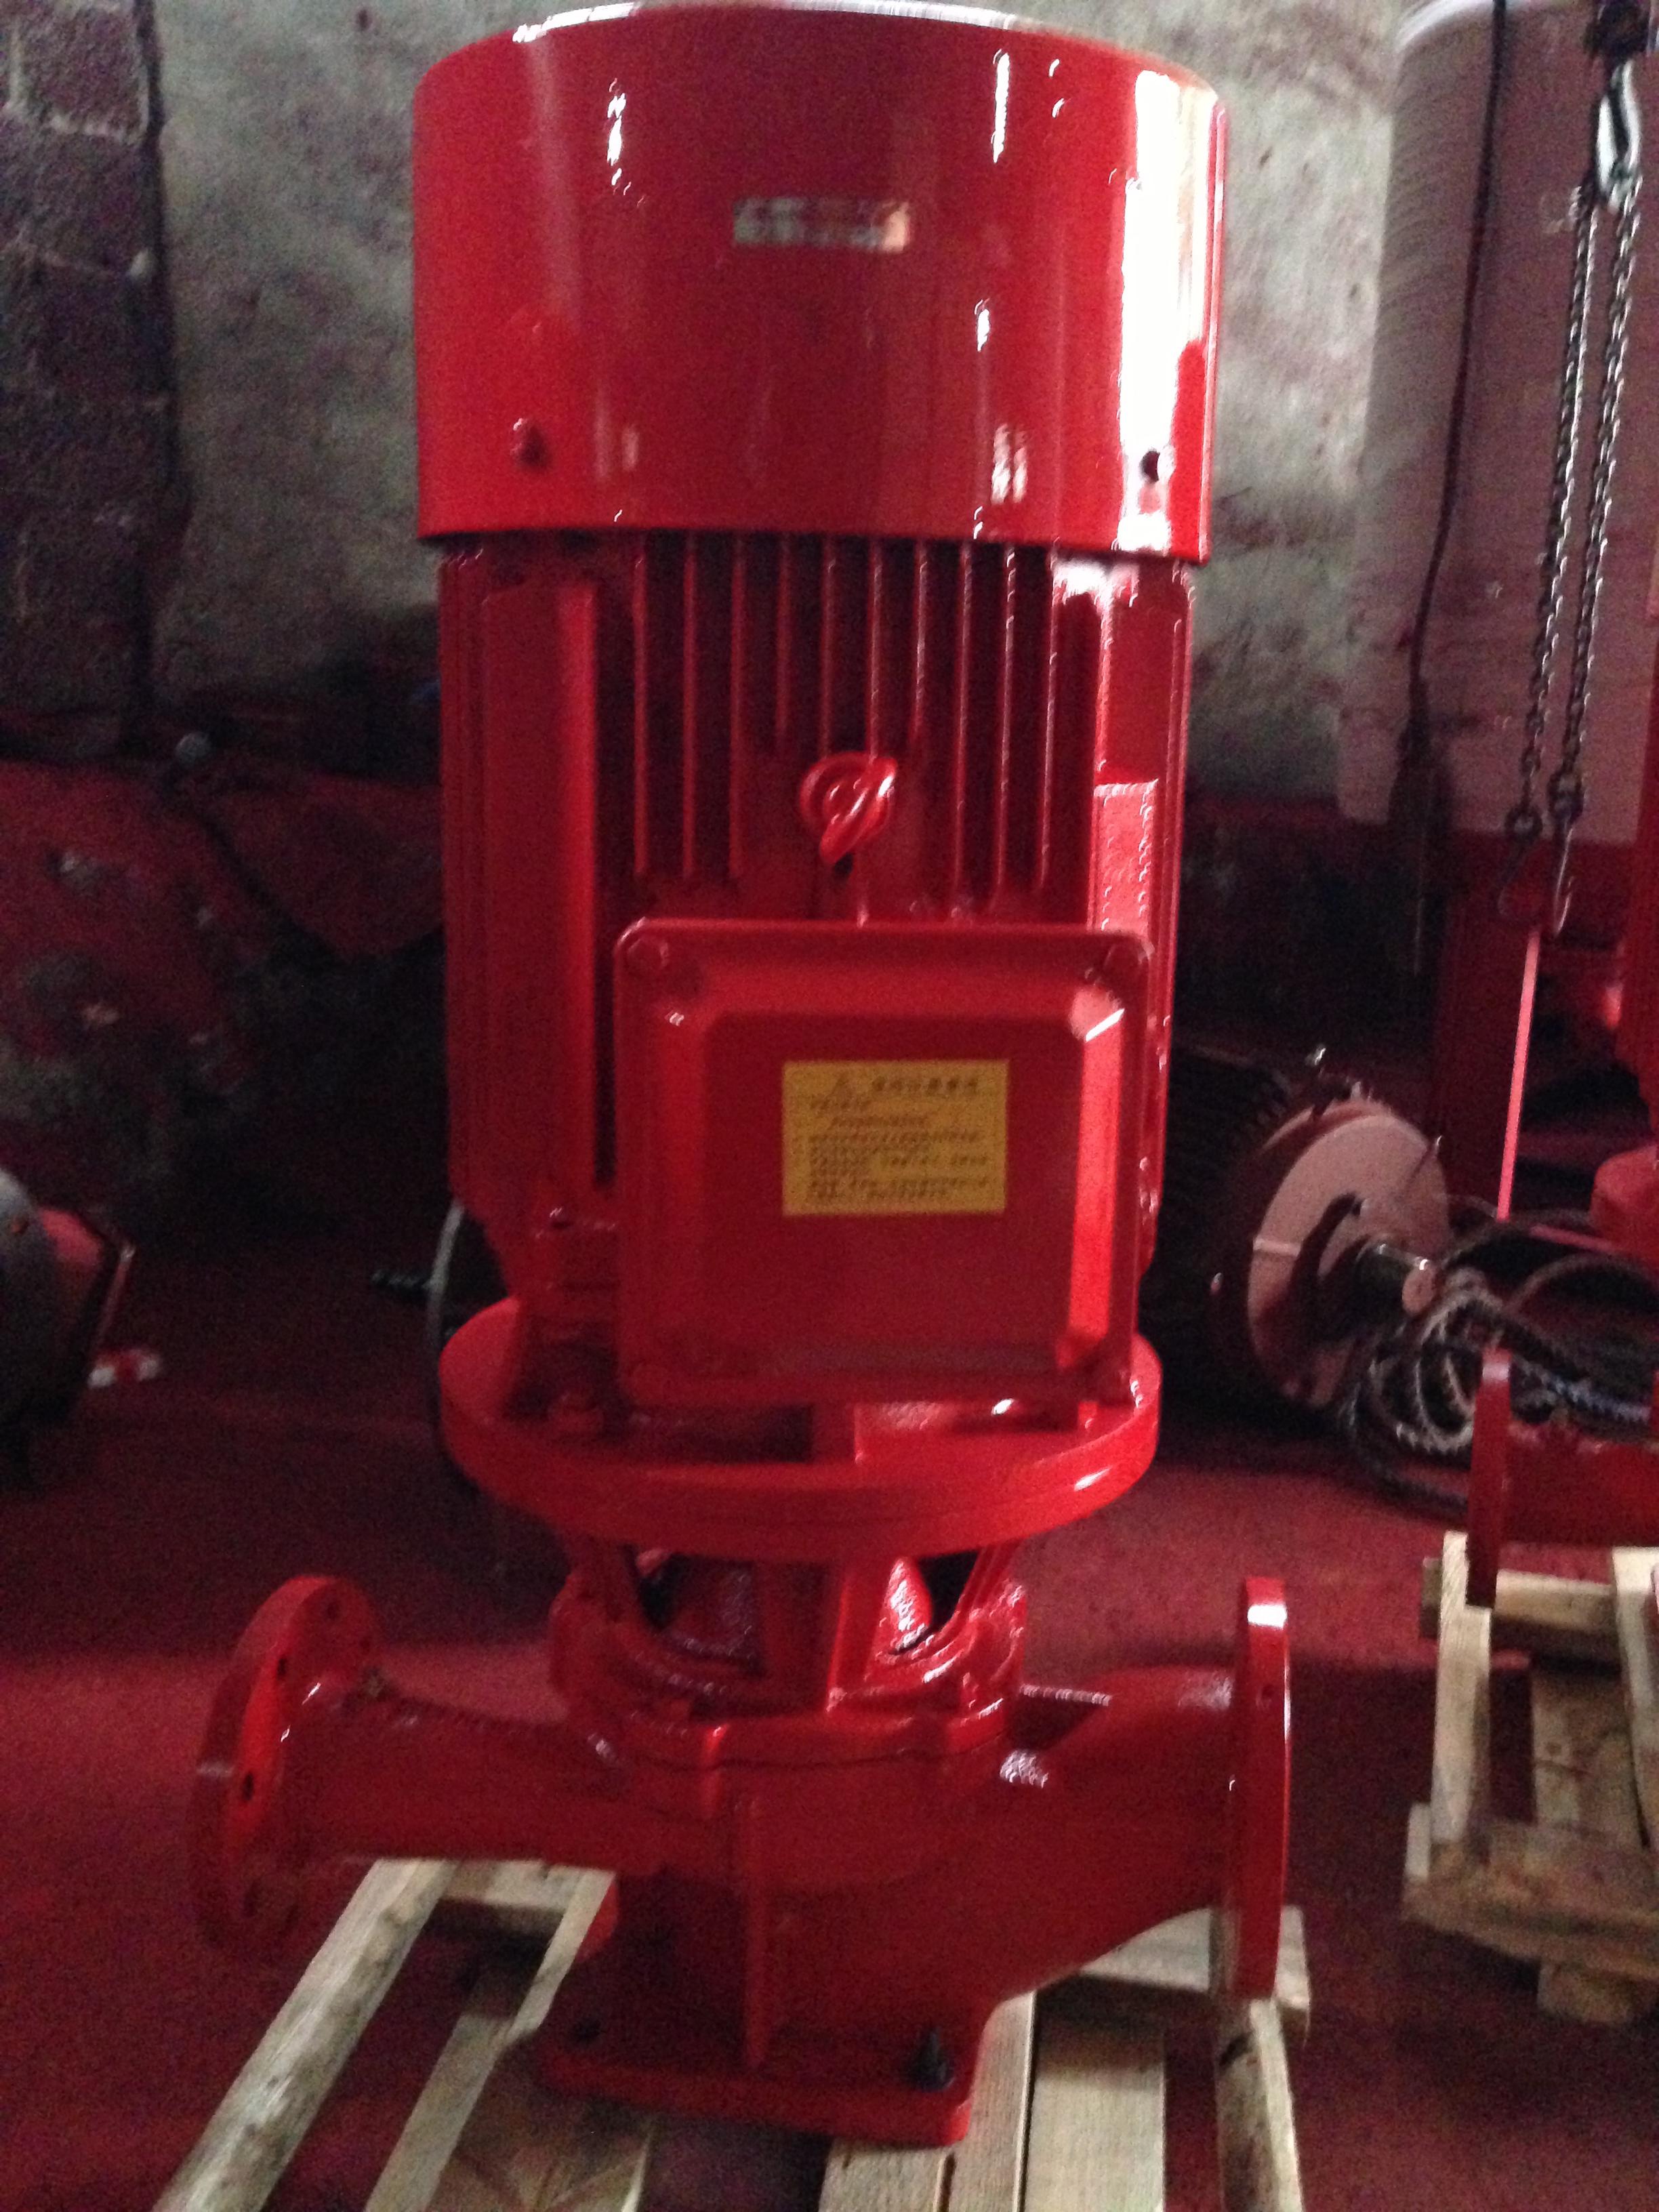 电动机立式单级消防泵 消火栓泵喷淋泵水泵